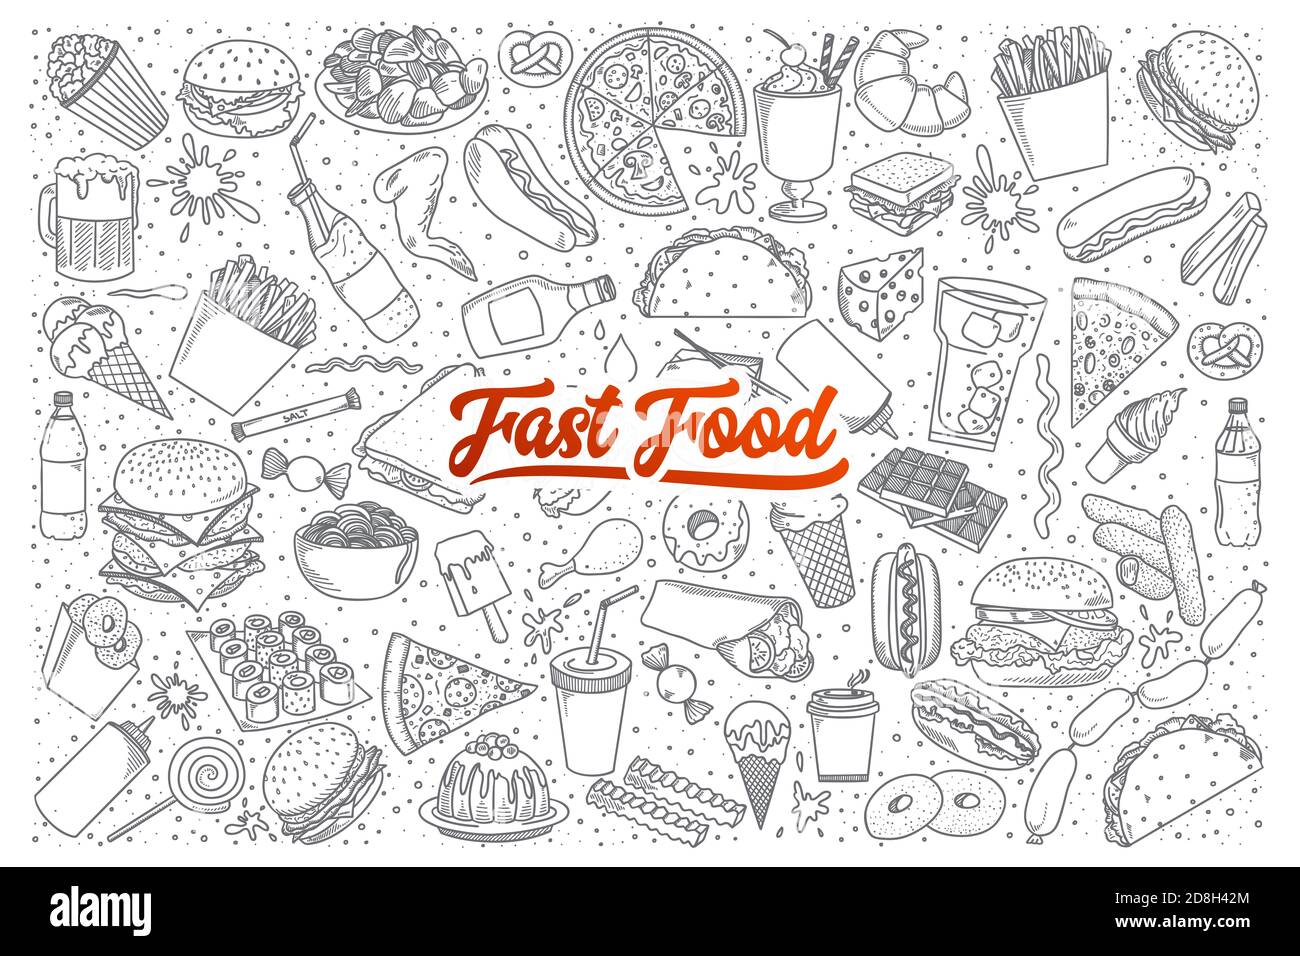 Handgezeichneter Satz Fast-Food-Doodles mit Schriftzug in vektor Stockfoto